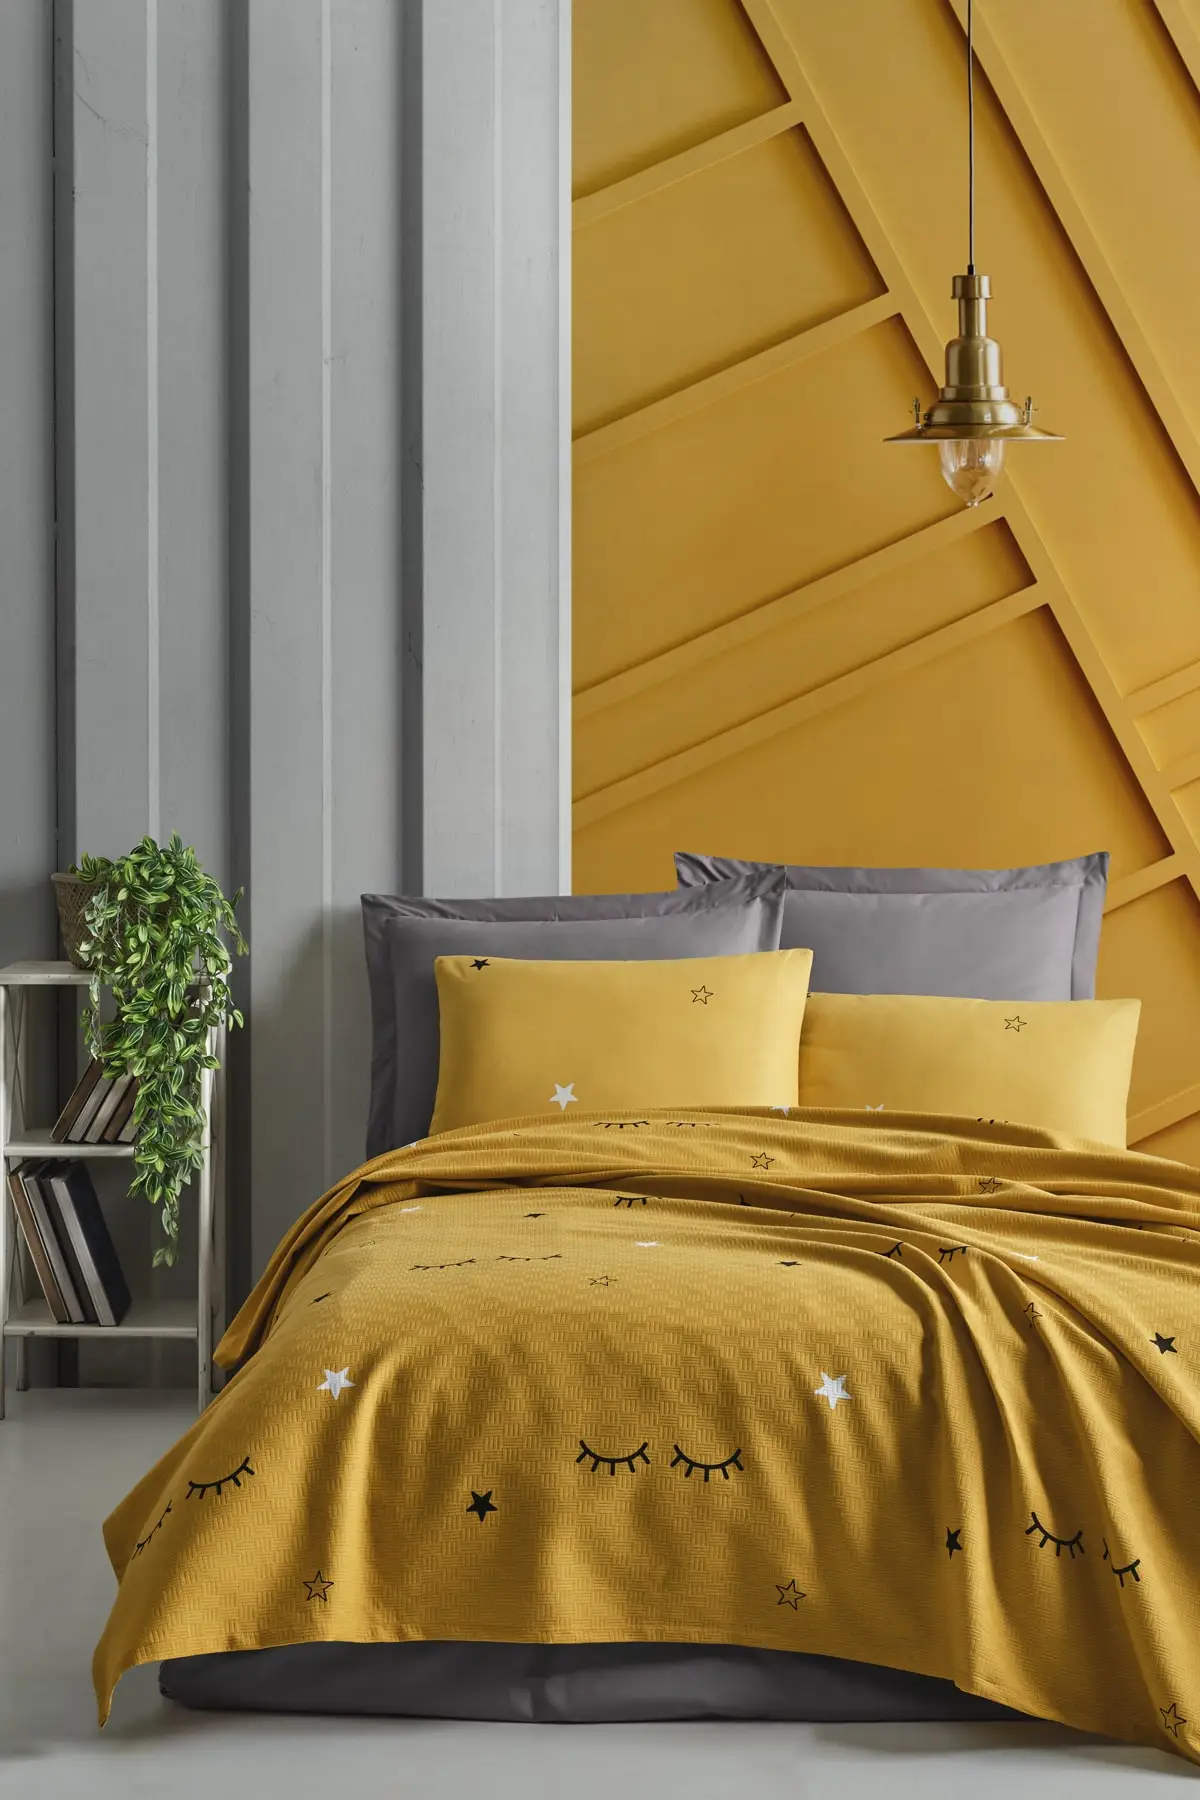 

Двойная индивидуальная желтая хлопковая ткань из 100 натурального пике, 200x235, домашний текстиль для спальни, без щуки и щуки